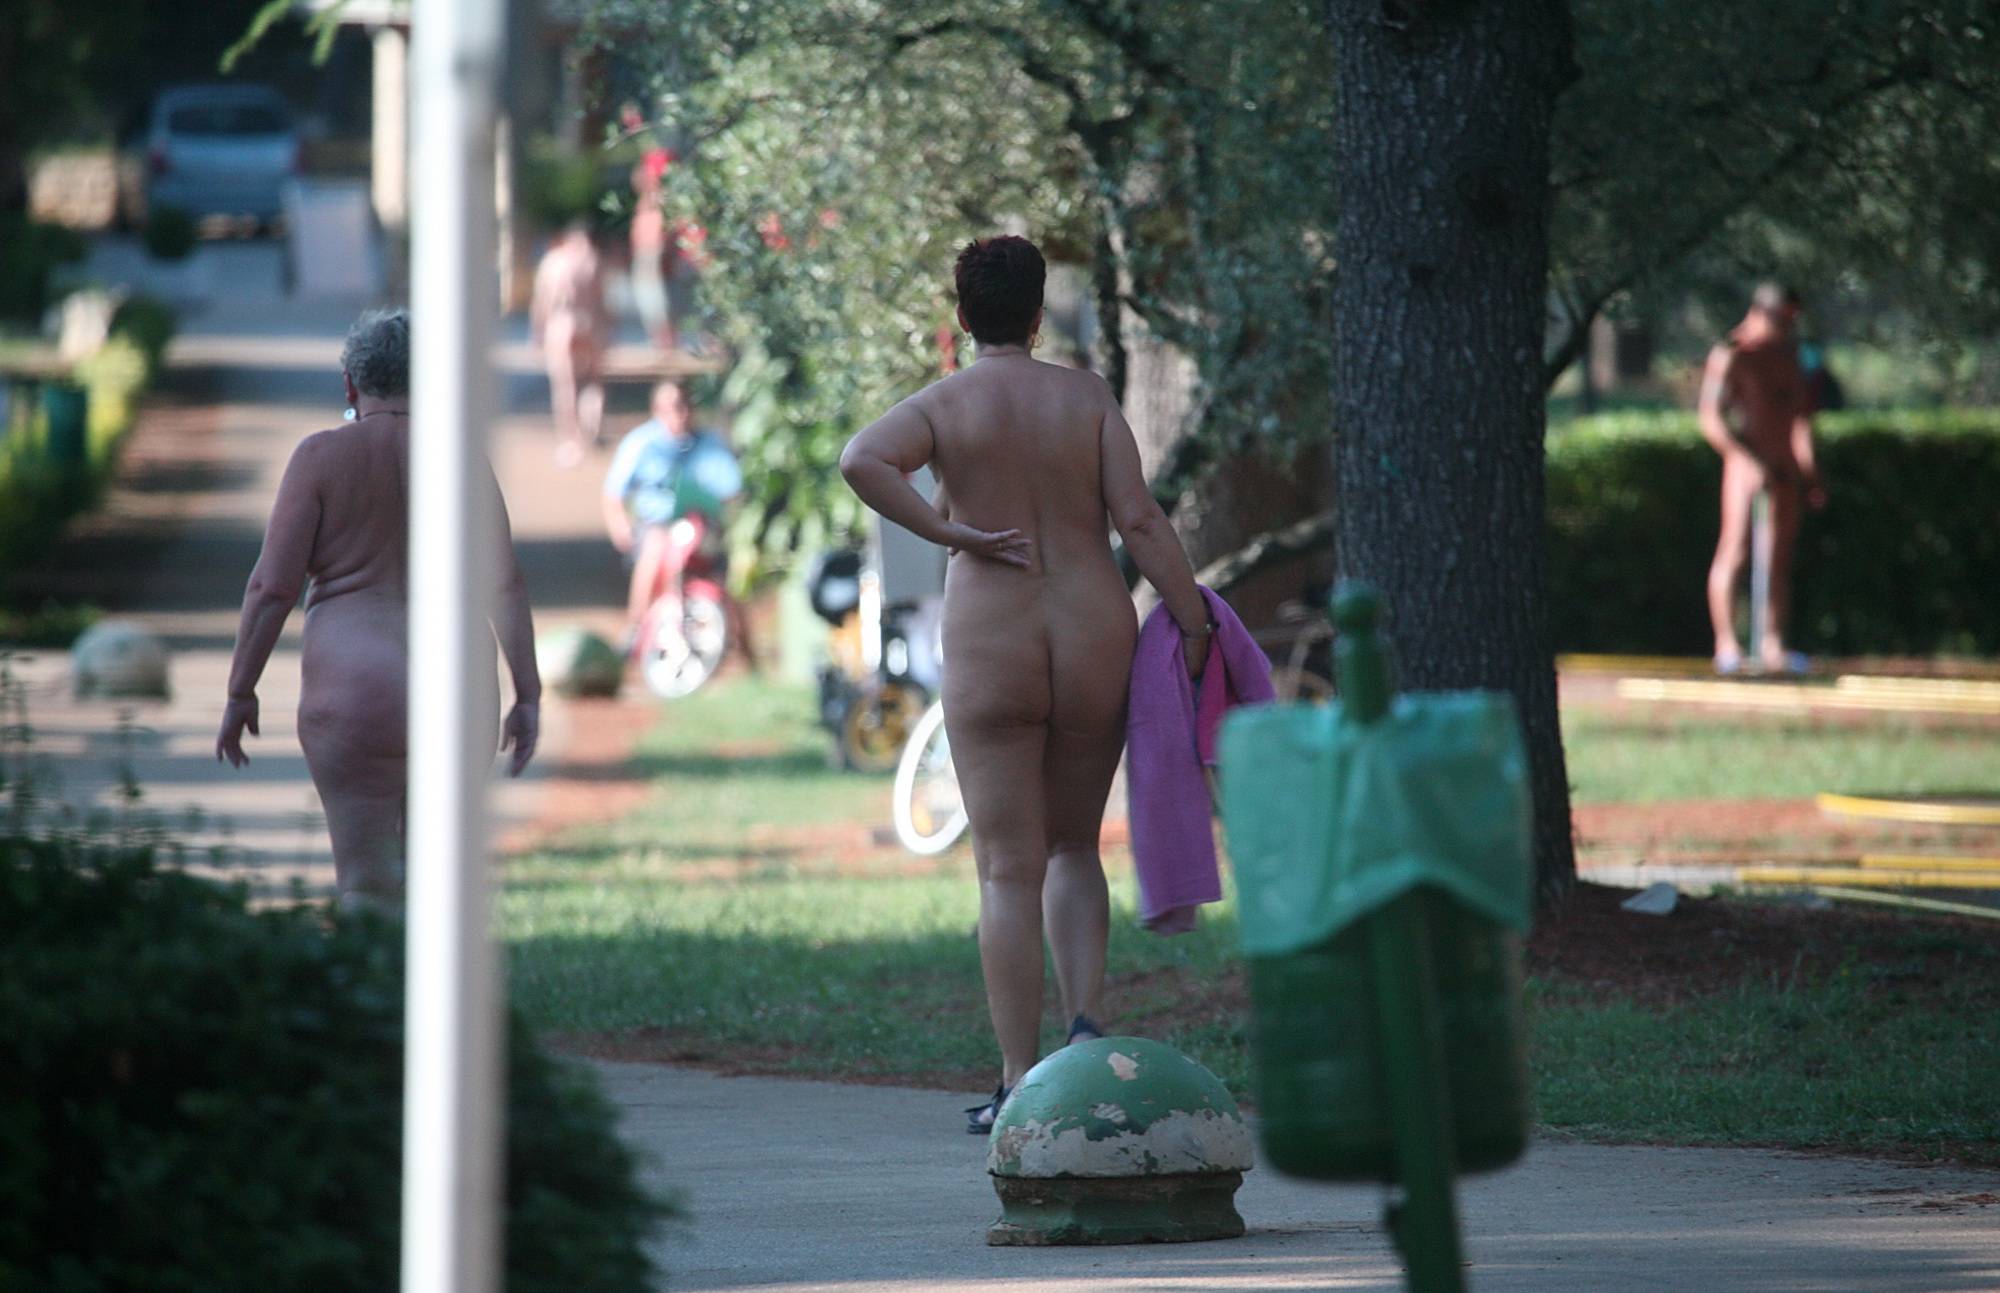 Nudist Brazil - Park Side Street Pass-Bys